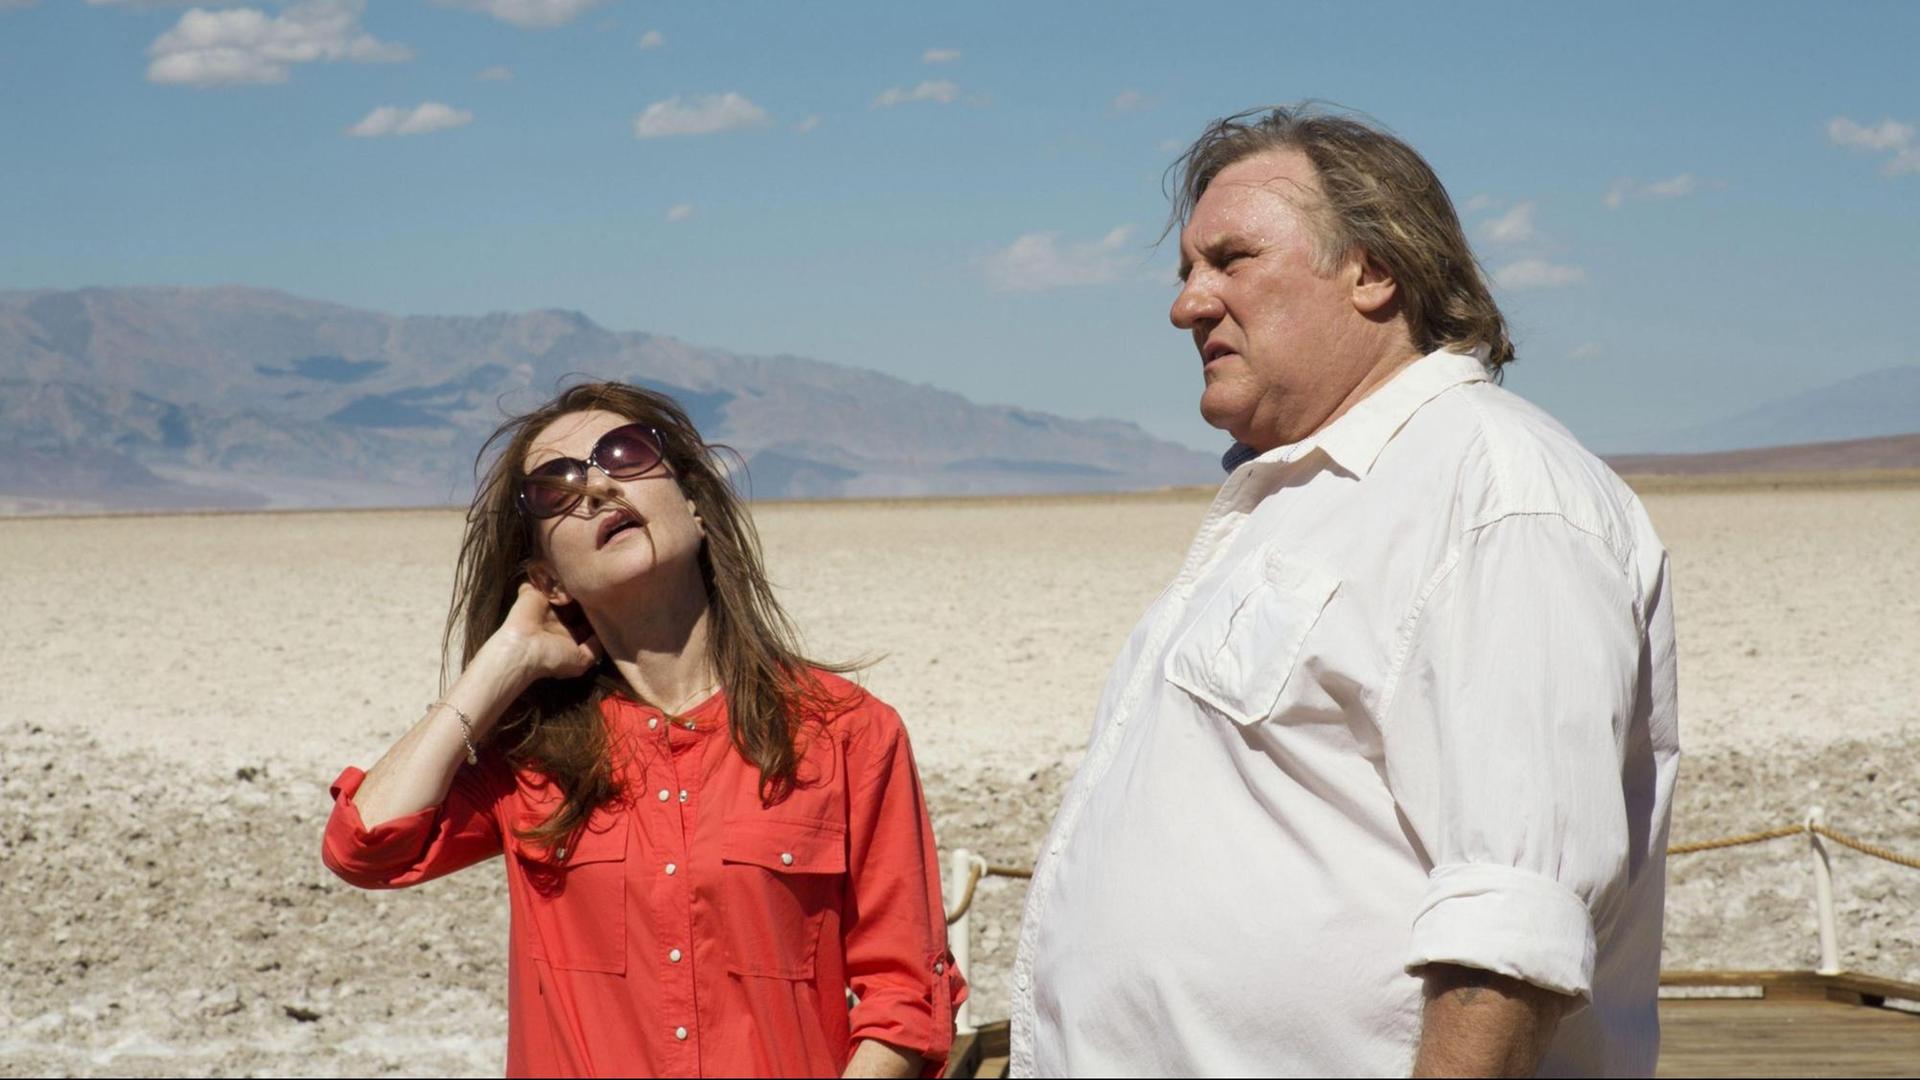 Szene aus dem Film "Valley of Love" von Guillaume Nicloux mit Isabelle Huppert (l.) and Gerard Depardieu